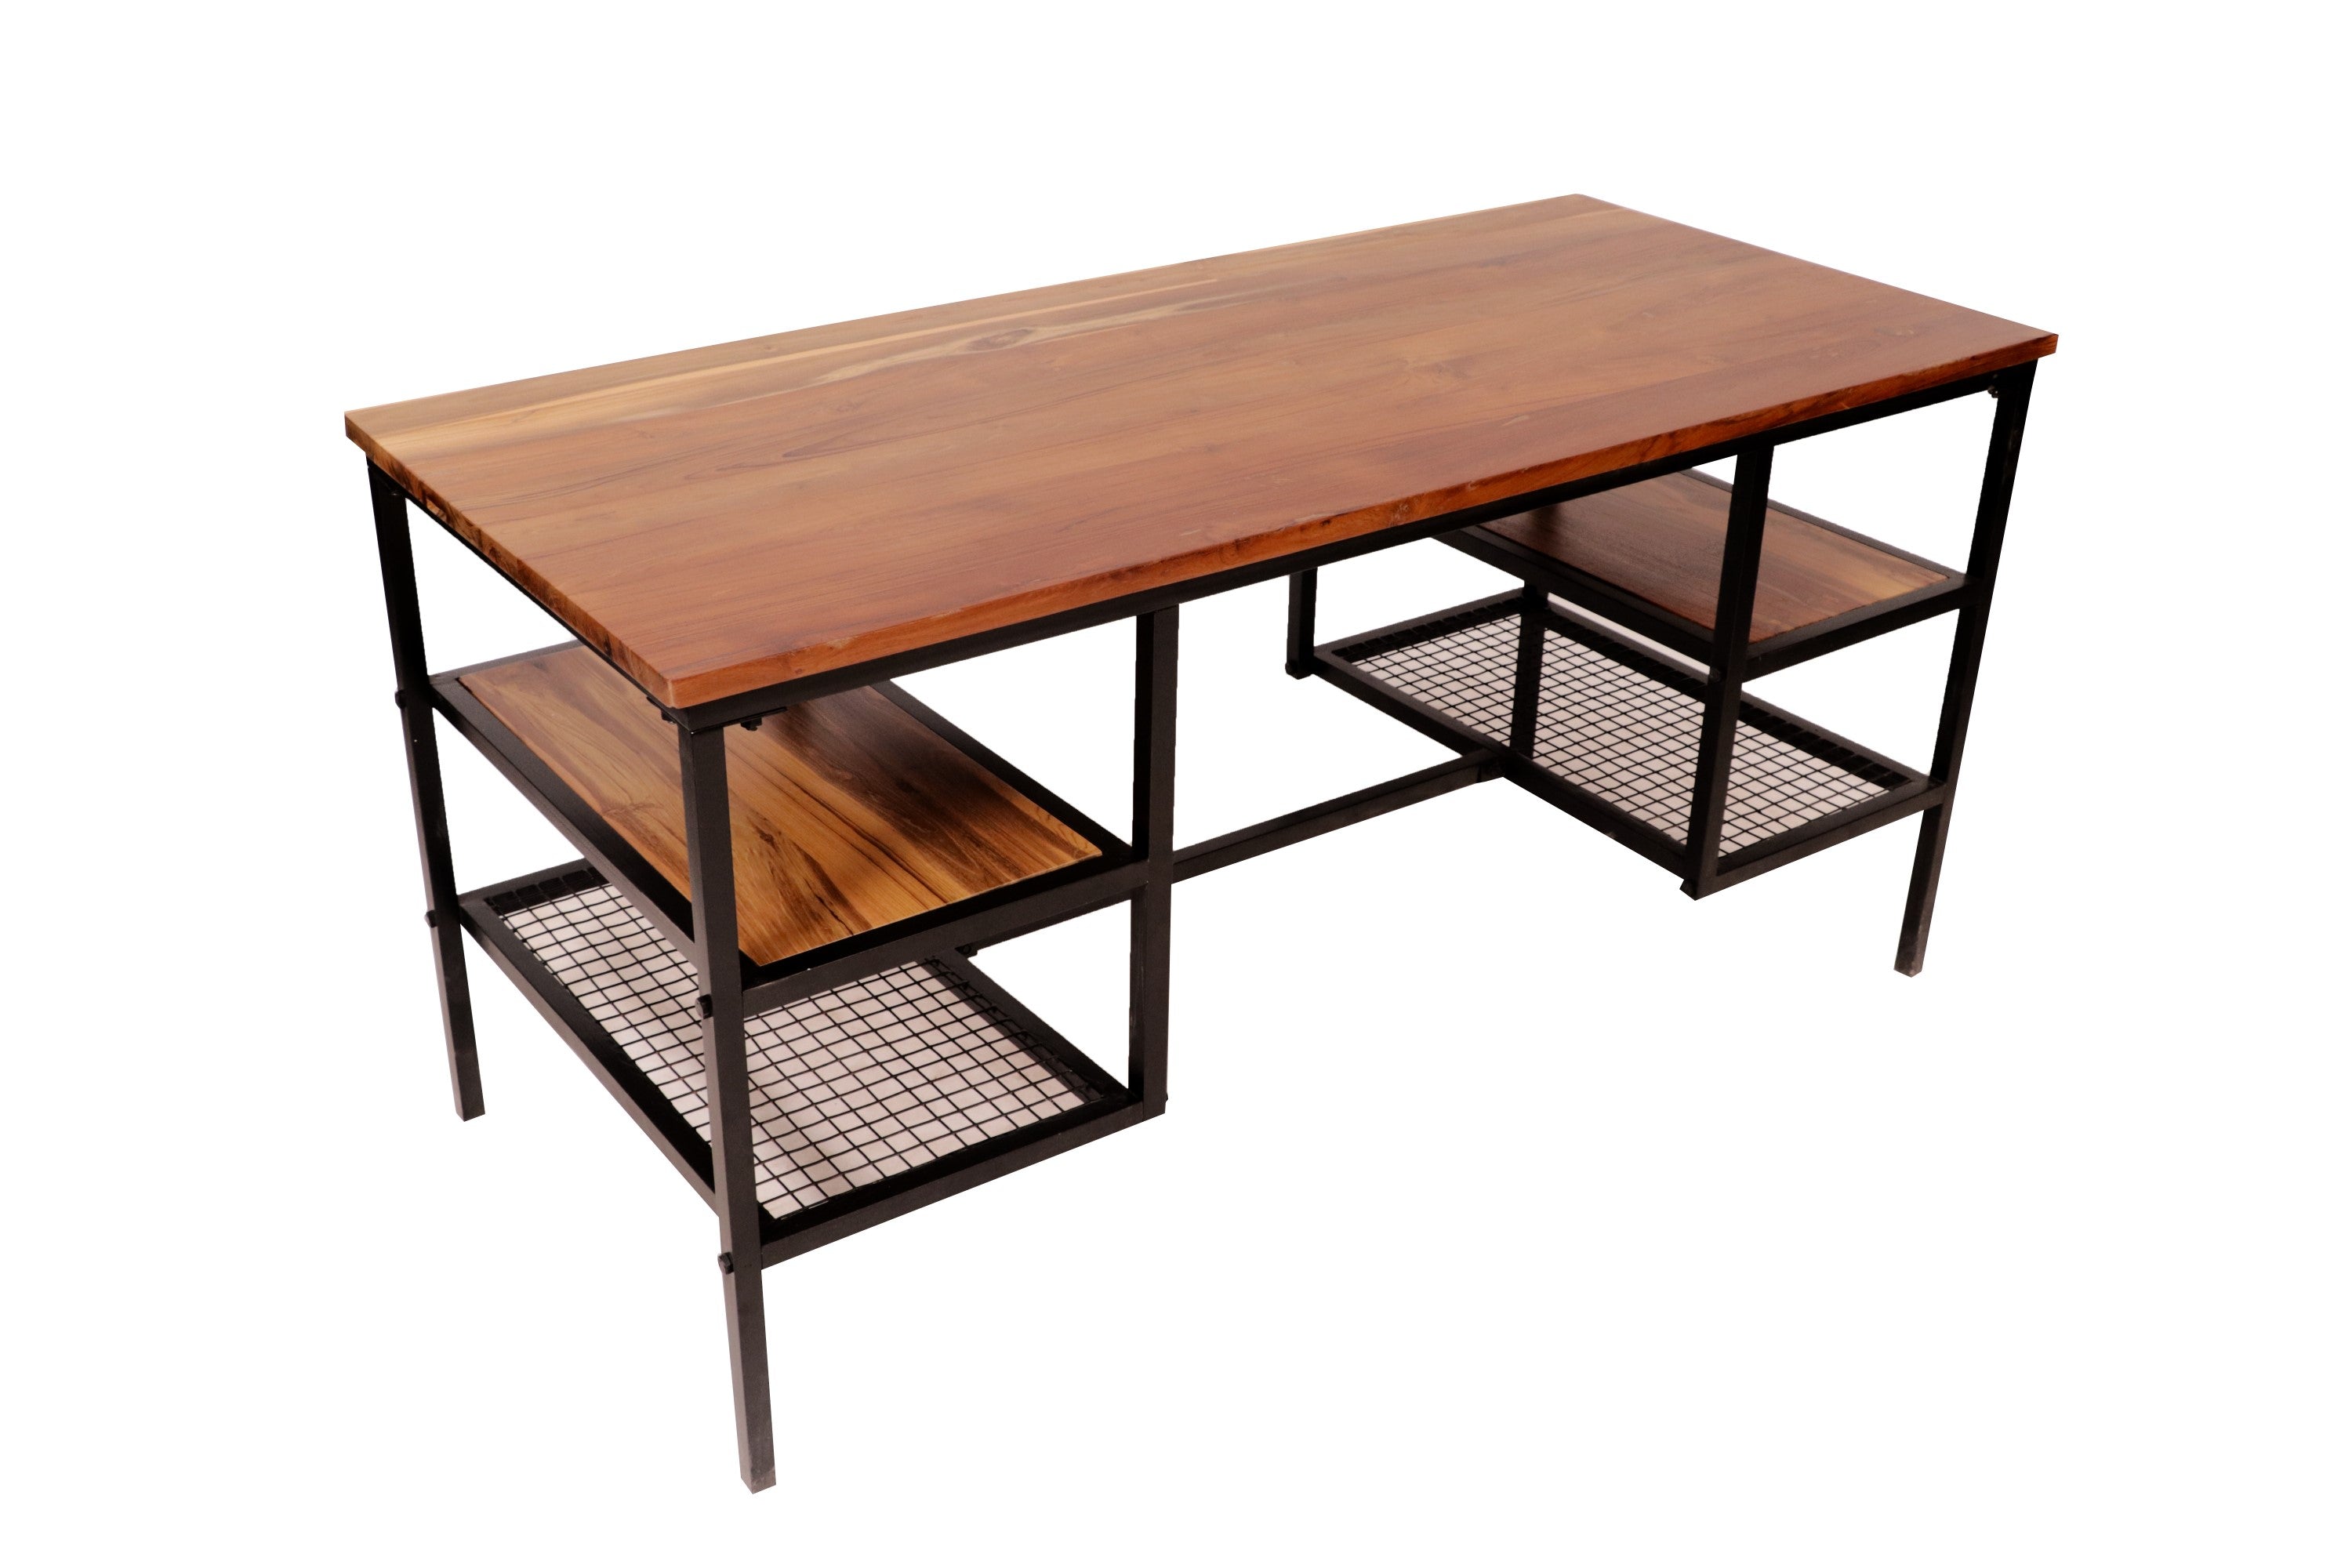 Teak metallic frame Multipurpose Table Study Table